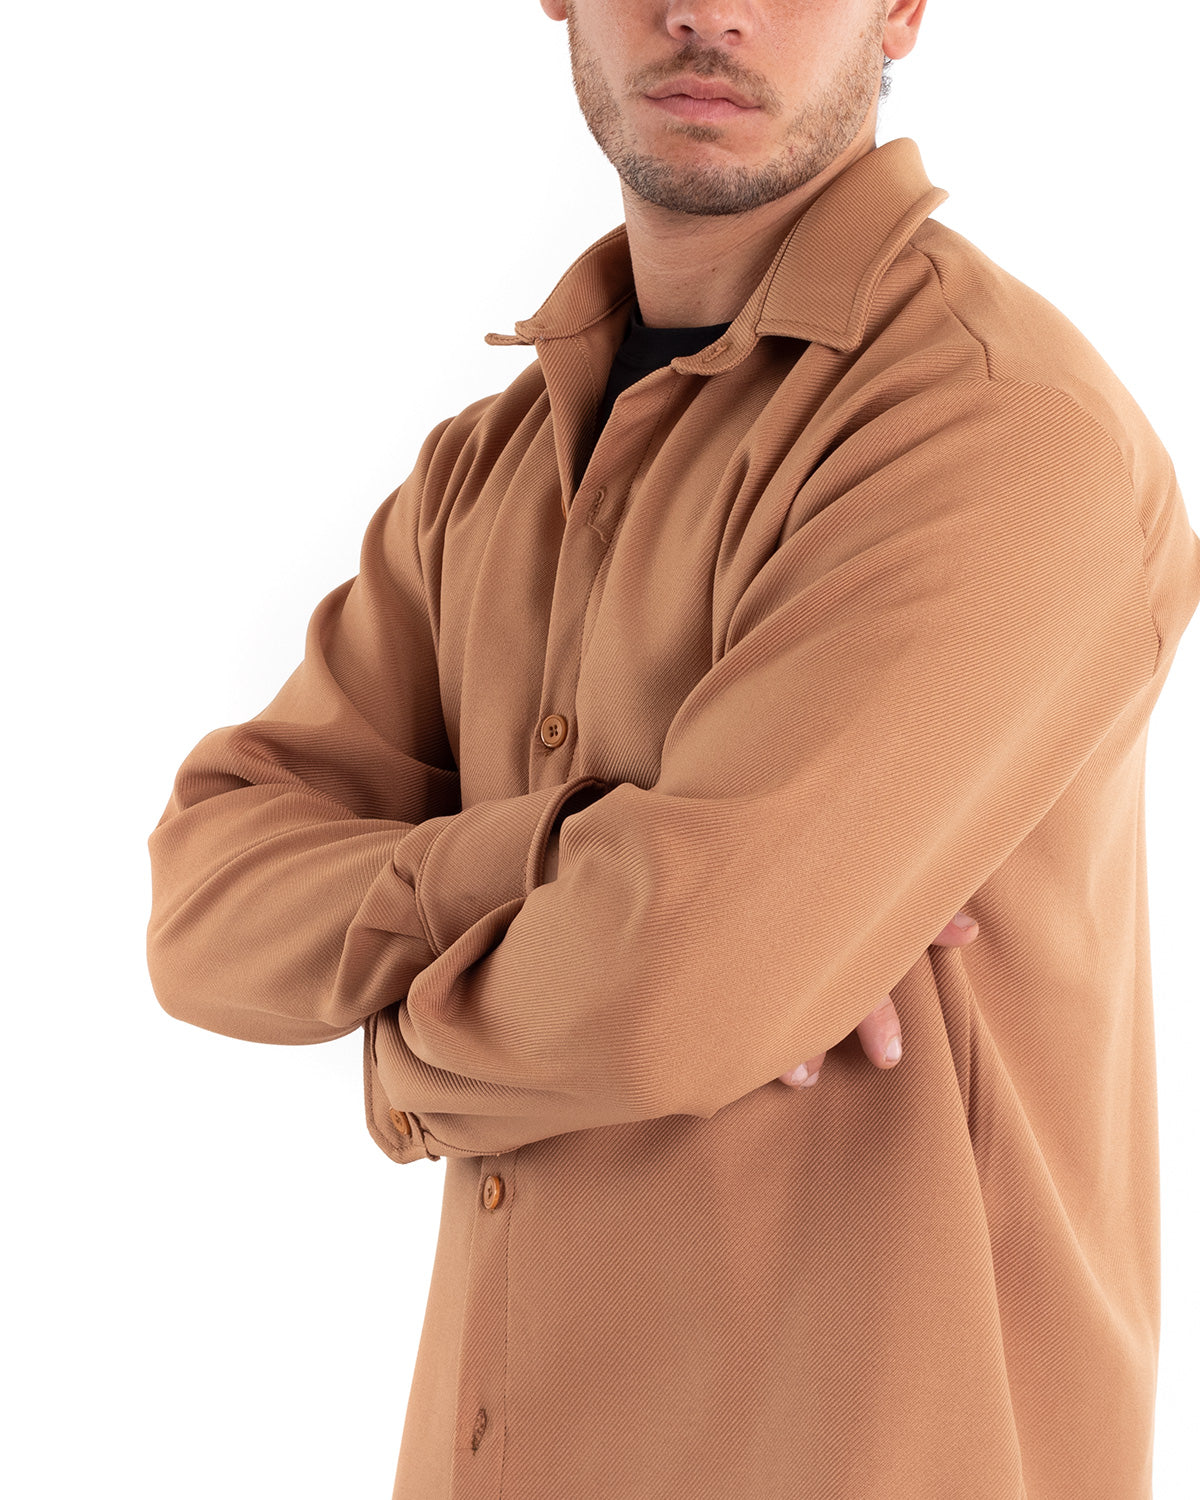 Camicia Uomo Con Colletto Manica Lunga Cotone Tinta Unita Camel GIOSAL-C2465A